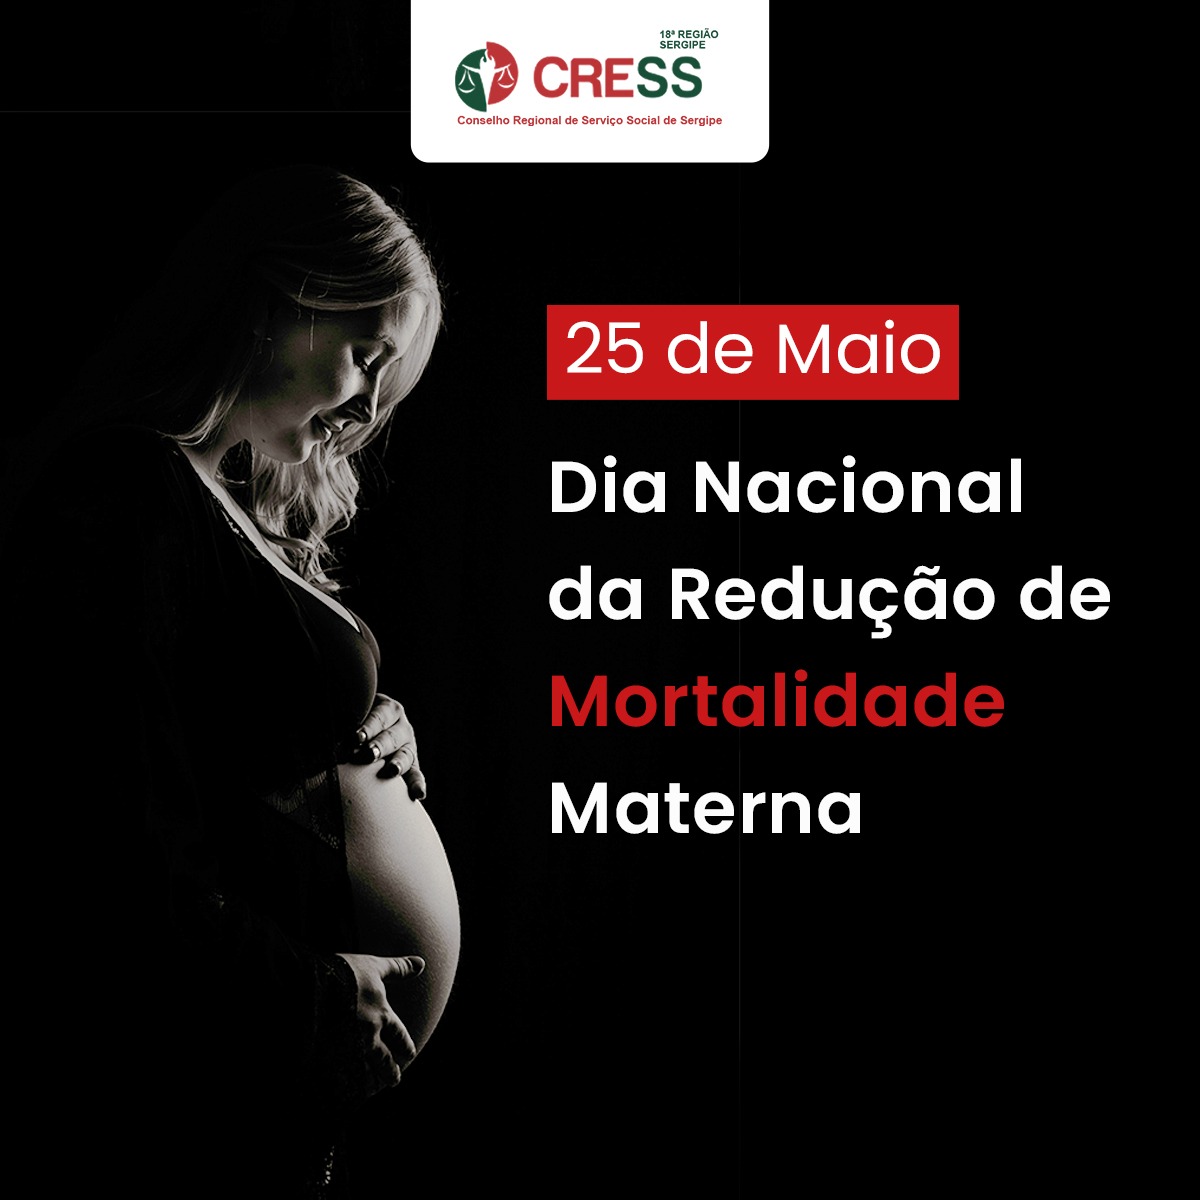 28 de maio: Dia Nacional da Redução da Mortalidade Materna